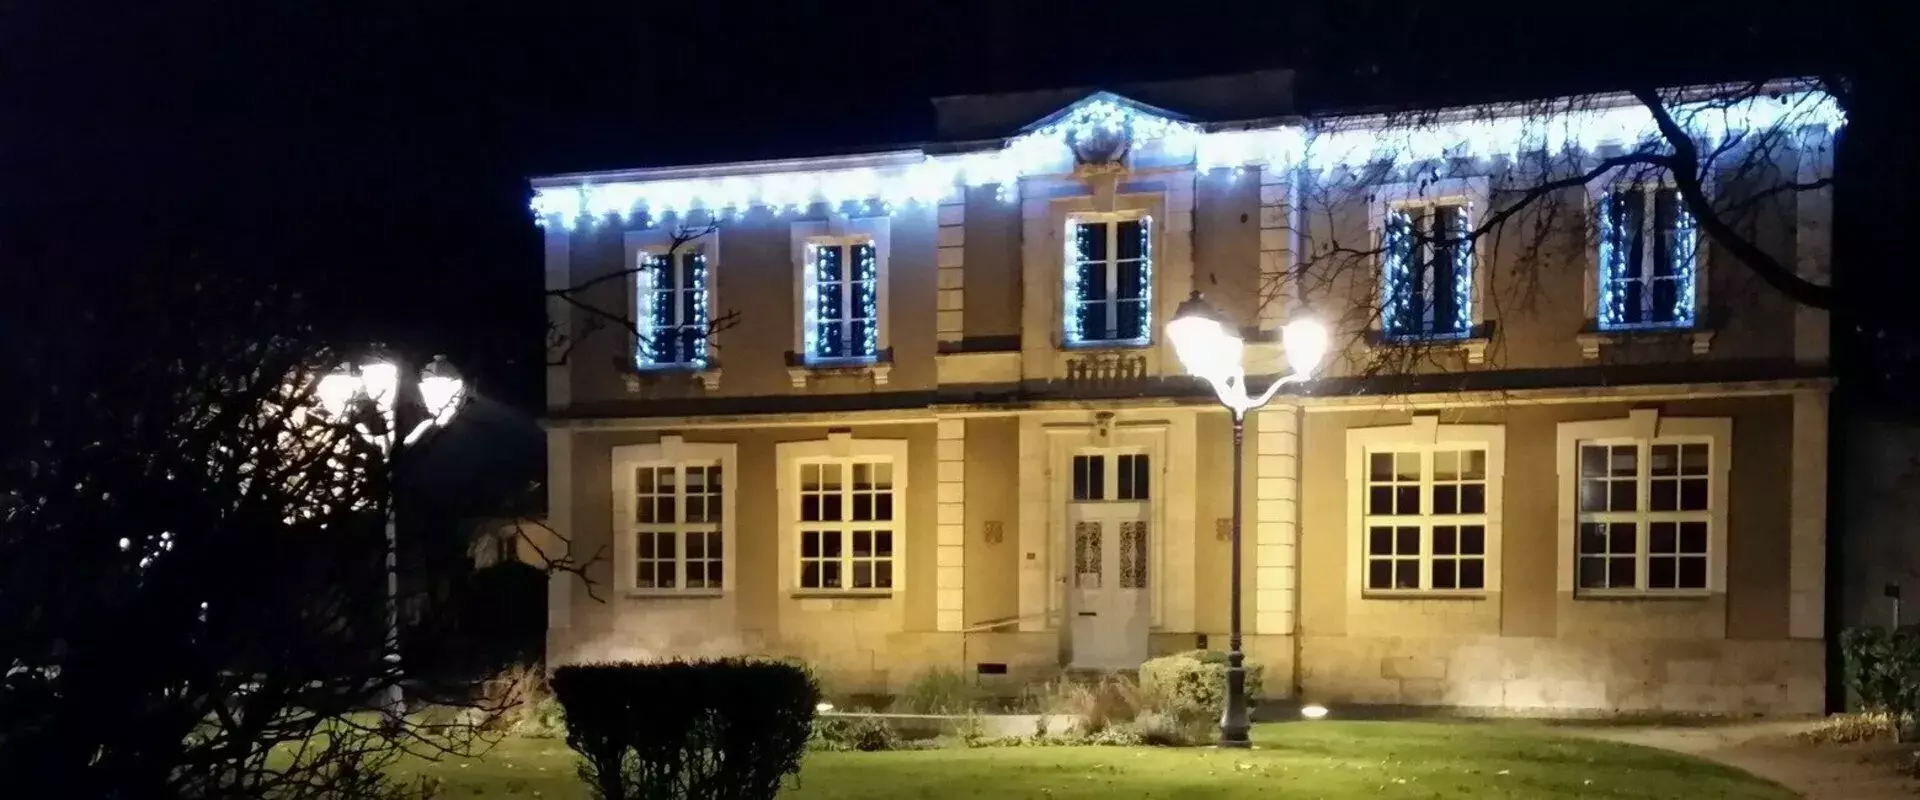 Bienvenue sur le site officiel de la mairie de Aschères-Le-Marché (45) Loiret